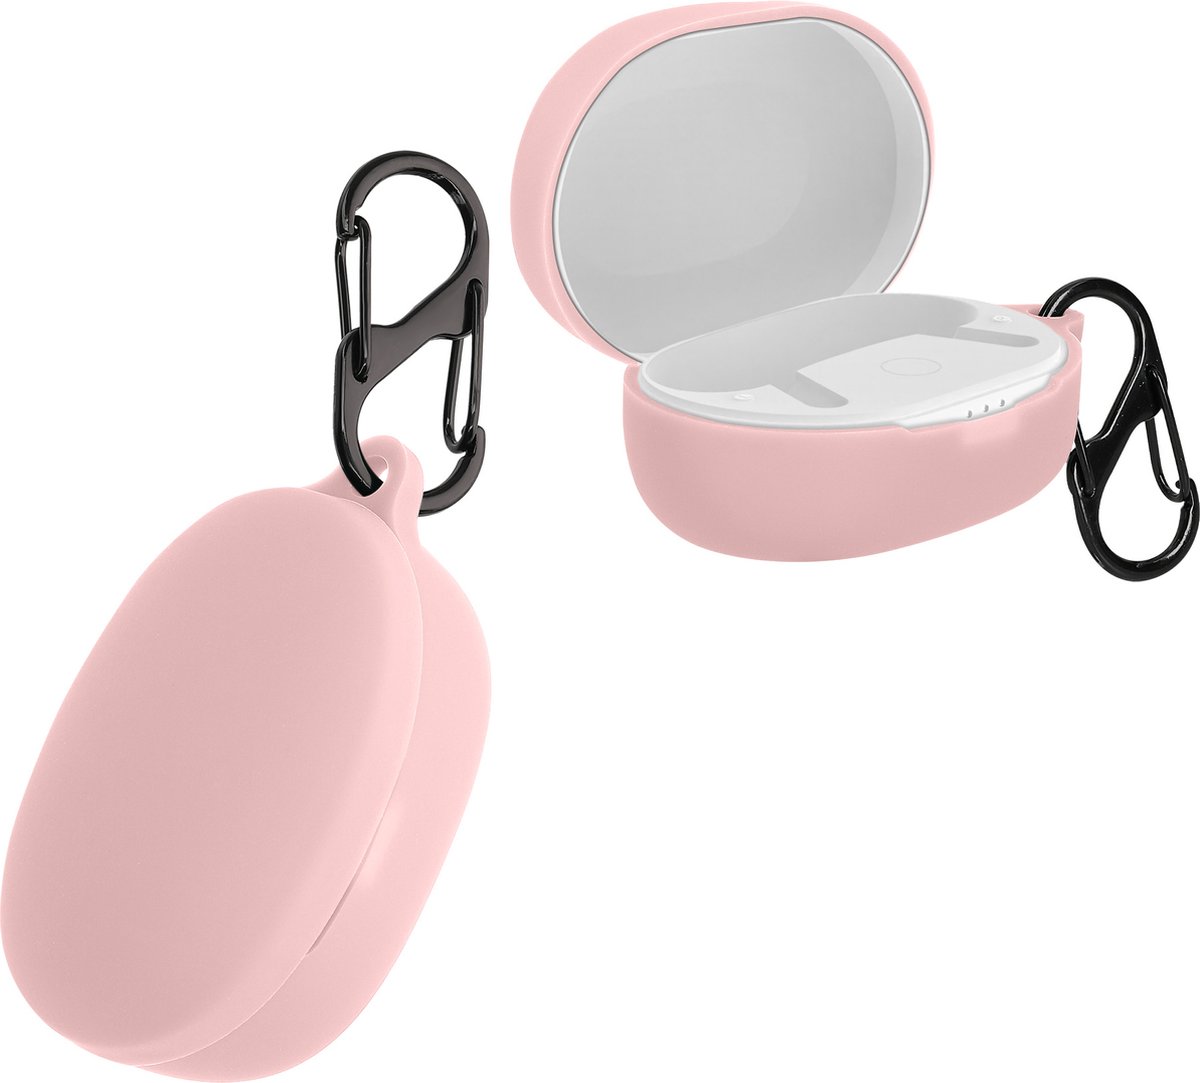 kwmobile Hoes voor Anker Soundcore Life P2 mini - Siliconen cover voor oordopjes in roze